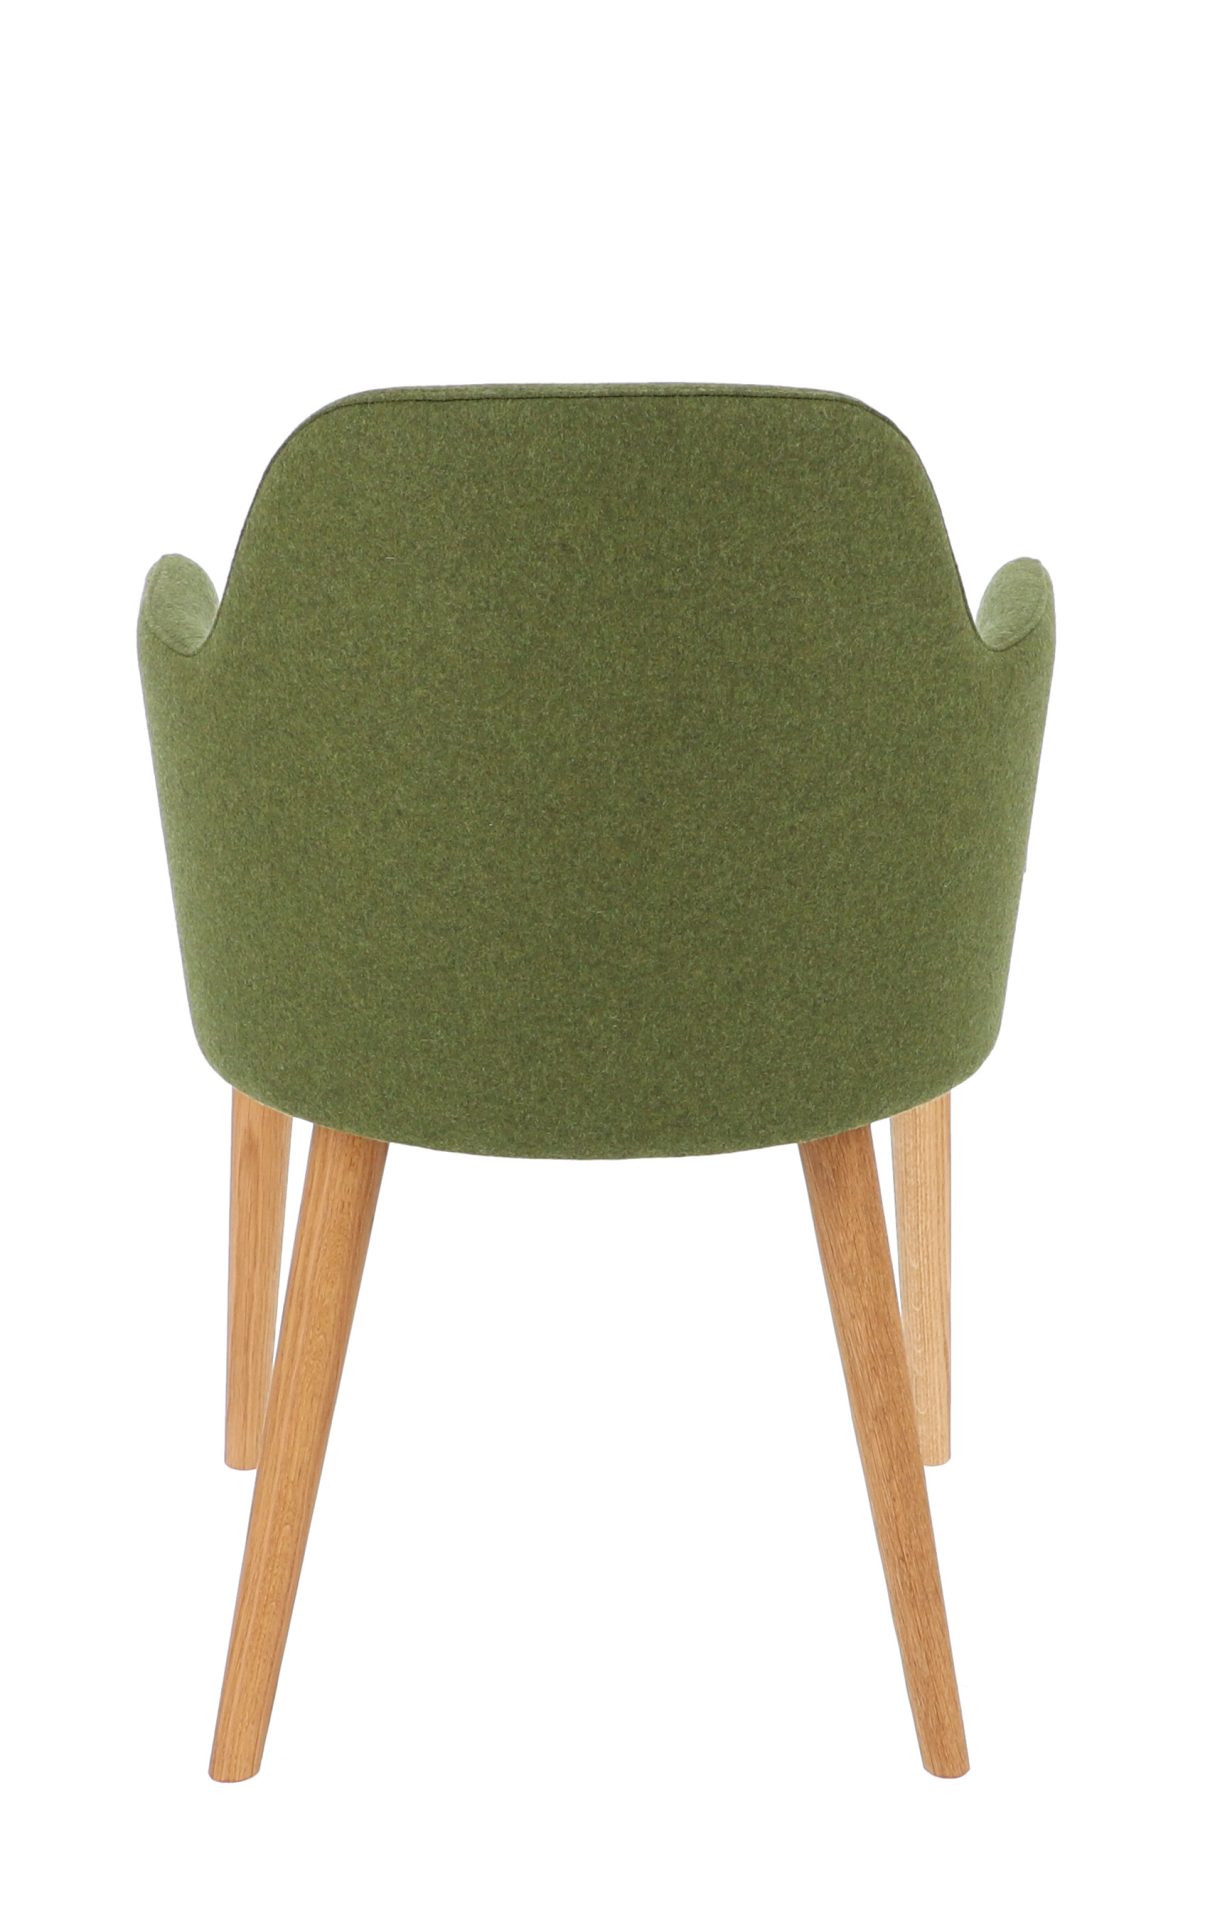 Der Sessel Flaminia wurde aus einem Eichenholz Gestell gefertigt. Die Sitz- und Rückenfläche ist aus Wolle. Designet wurde der Sessel von der Marke Jan Kurtz und hat eine moosgrüne Farbe.